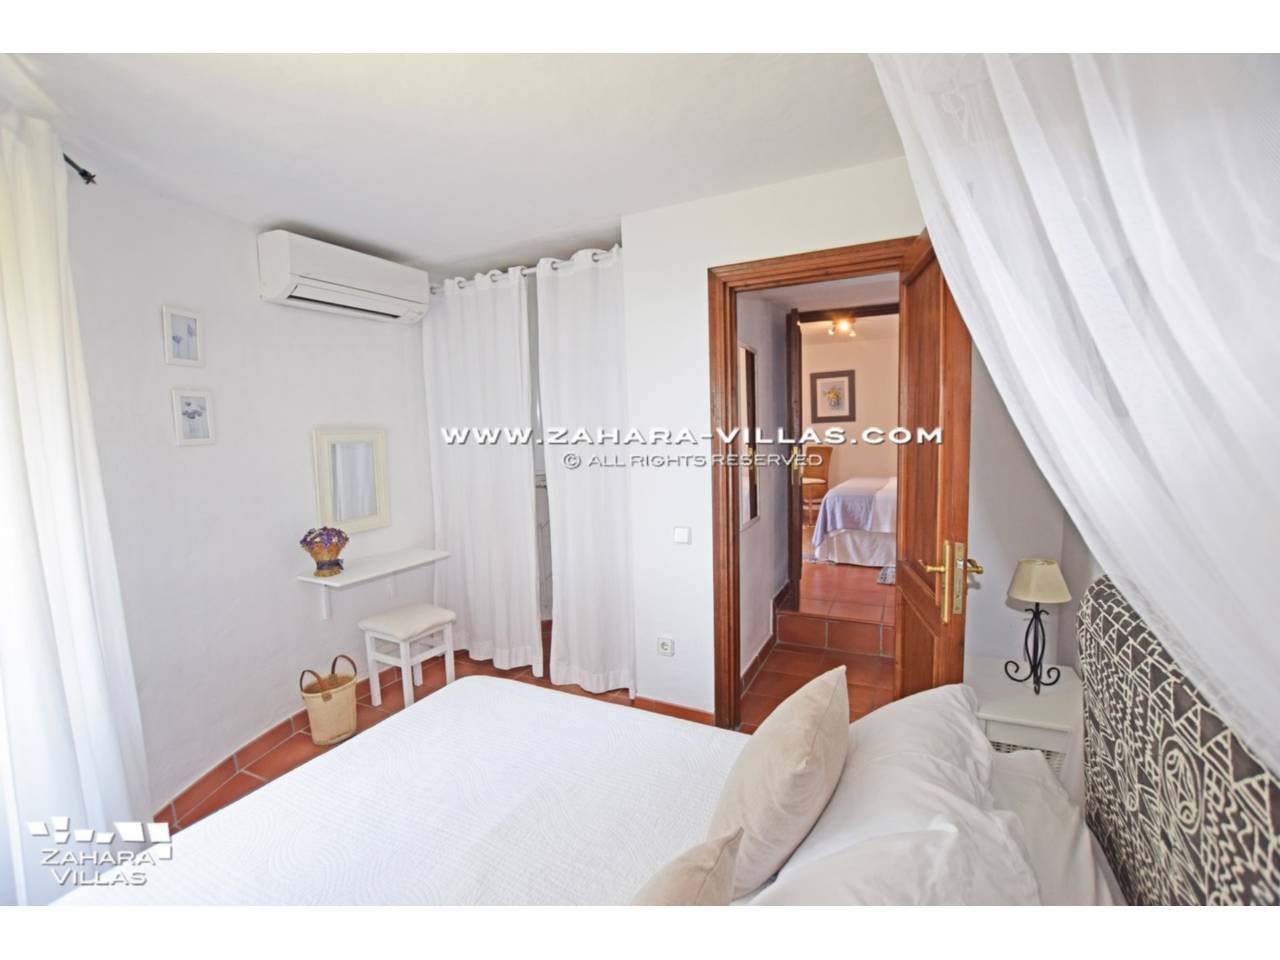 Imagen 43 de Wonderful Villa for sale in Atlanterra-Zahara de los Atunes